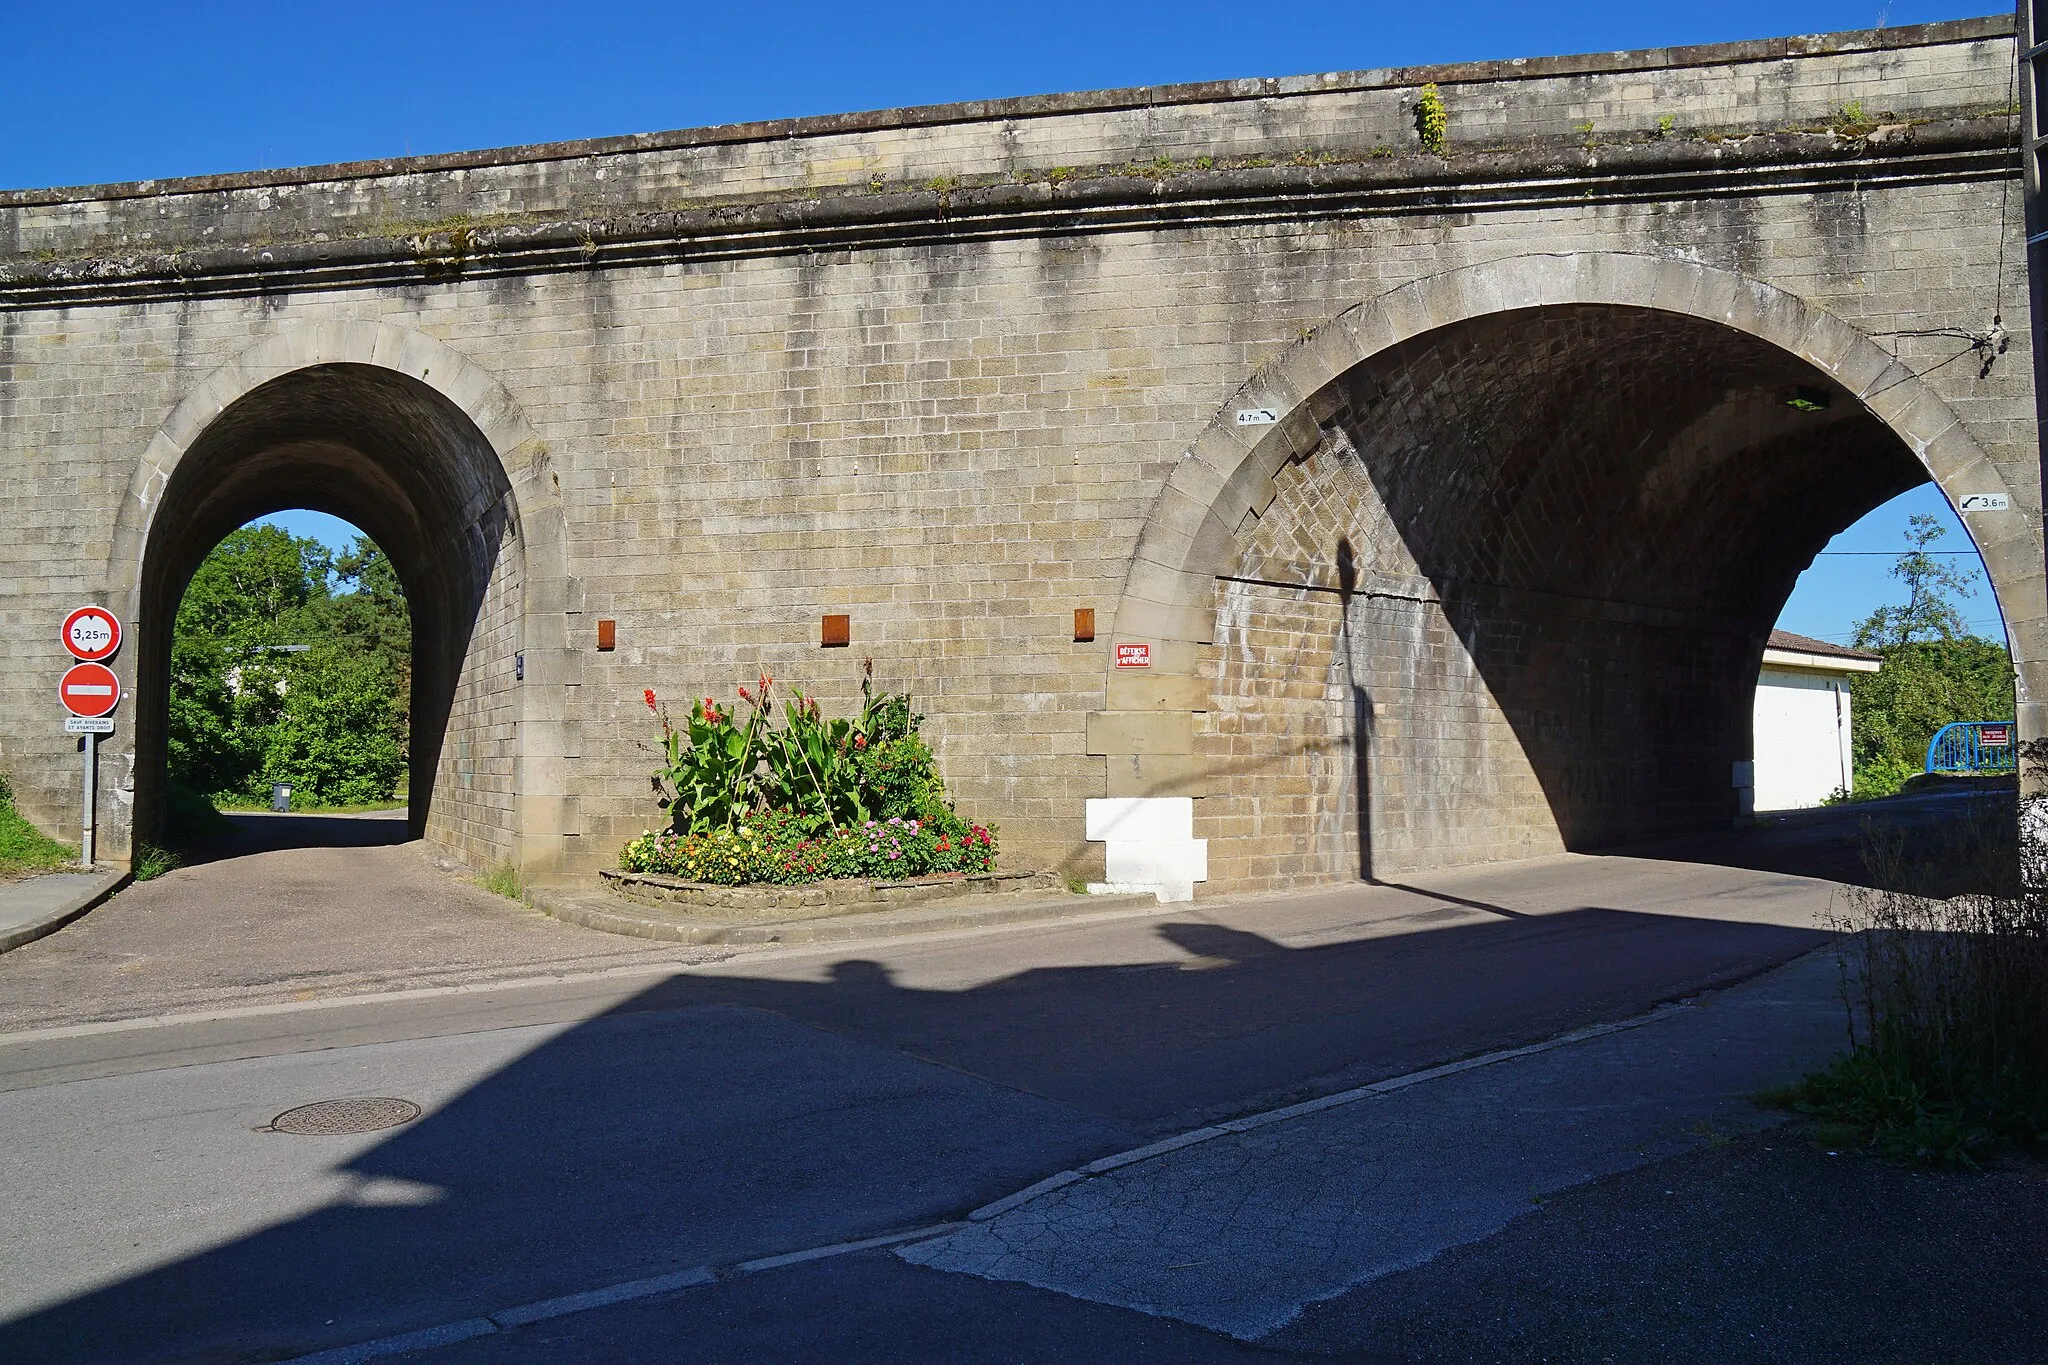 Photo showing: Pont de la voie ferrée de Aillevillers-et-Lyaumont à la confluence de la Semouse et de l'Augronne.